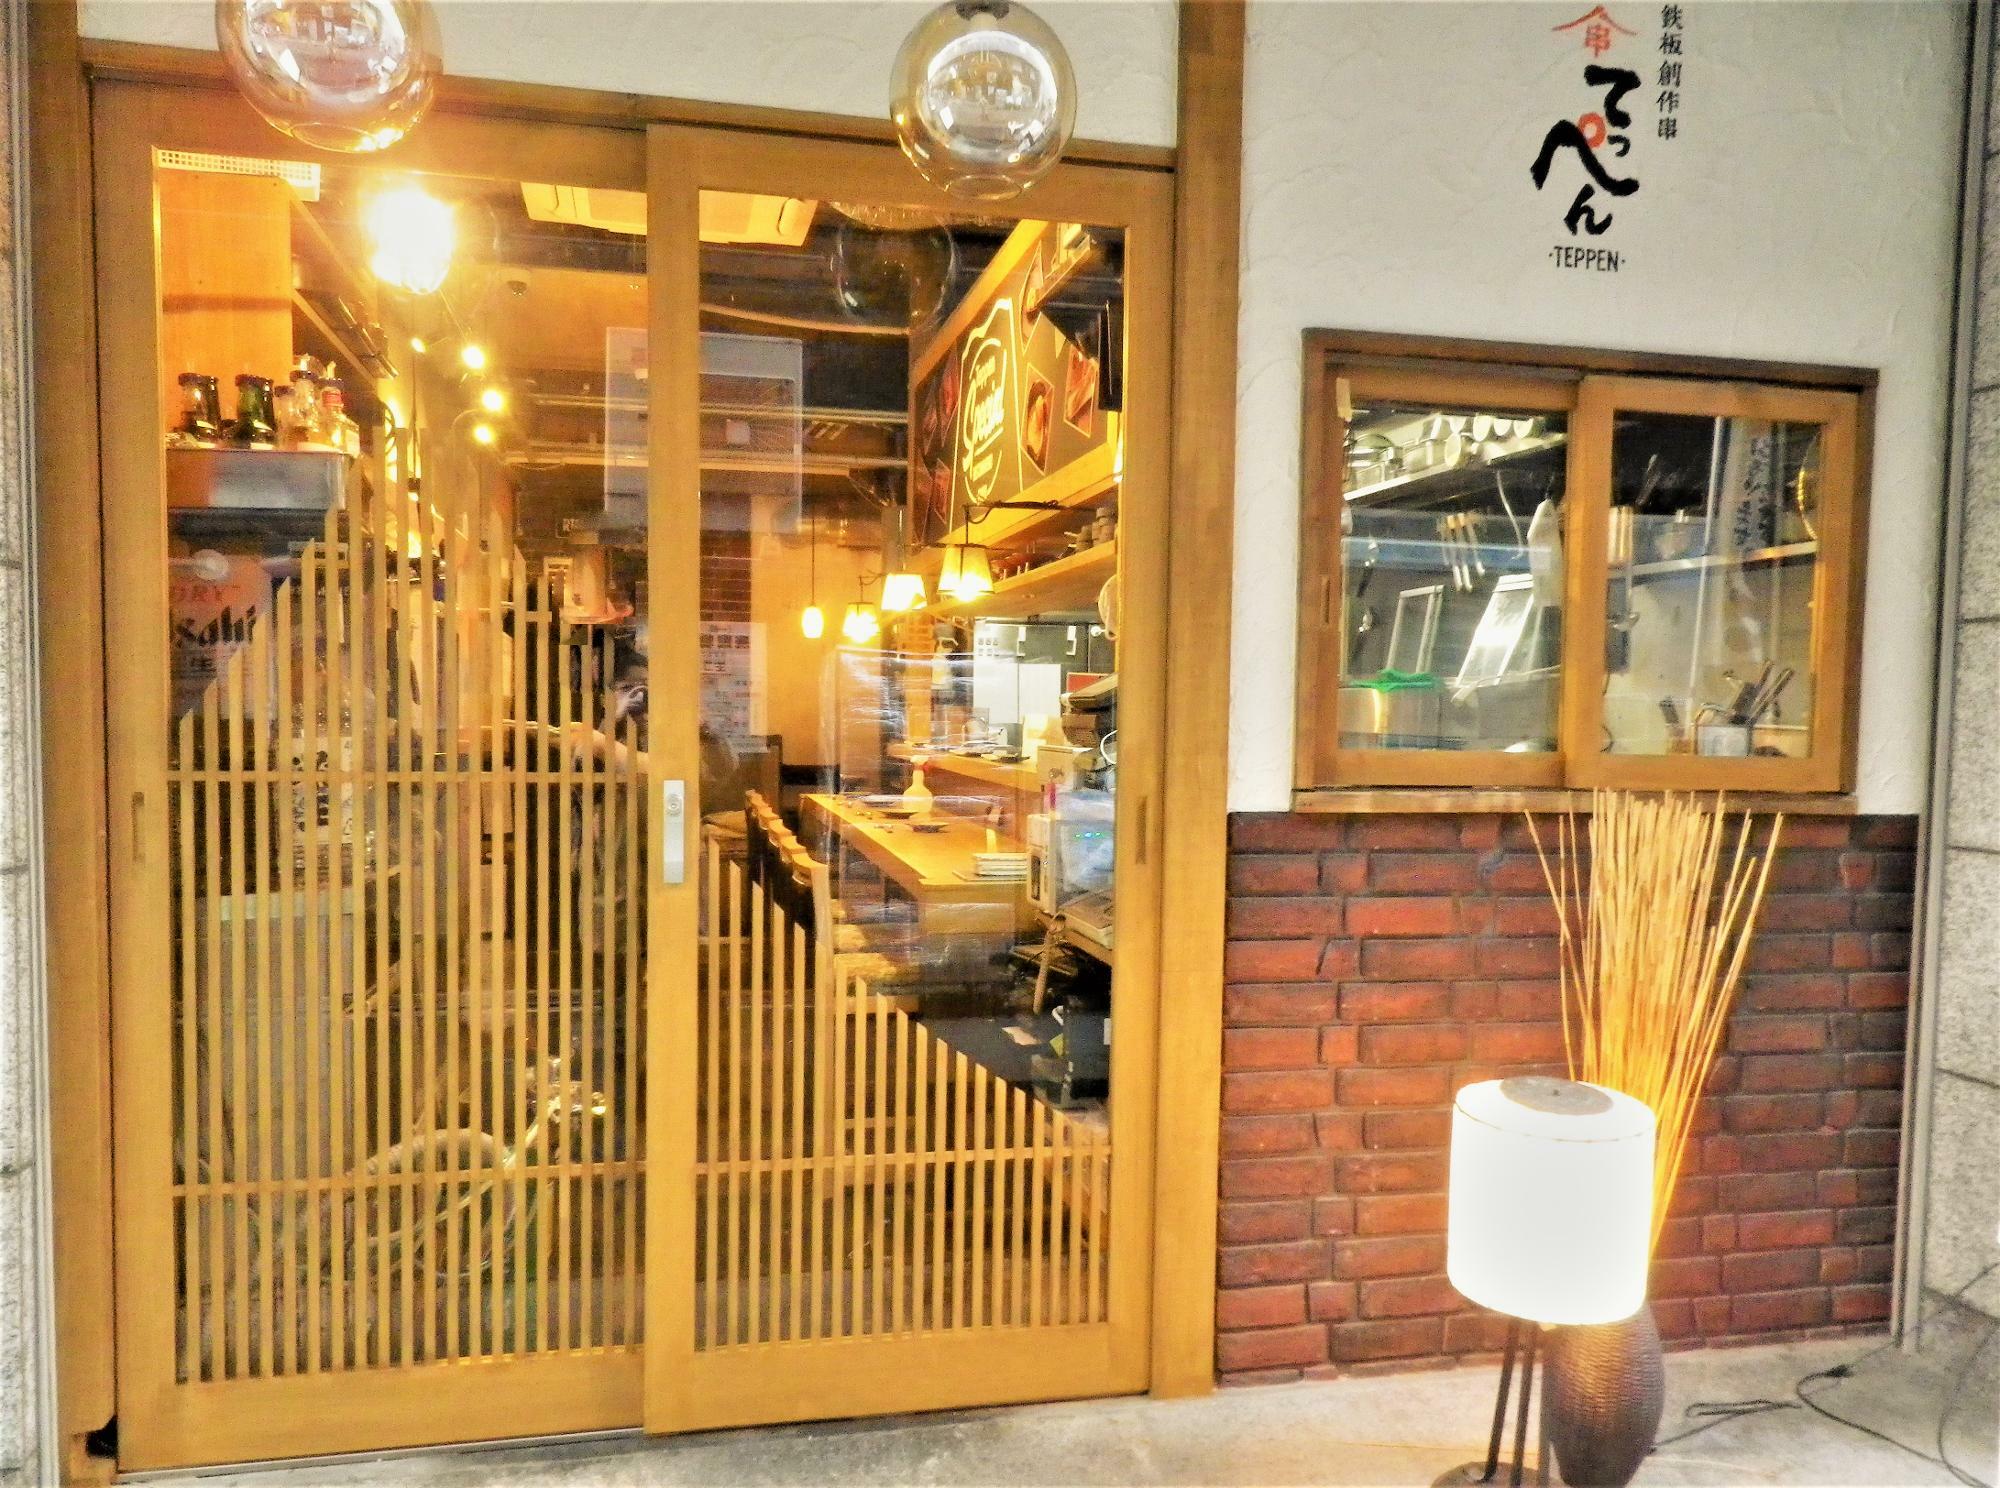 オープン間近の「鉄板創作串 てっぺん 西中島店」の様子。